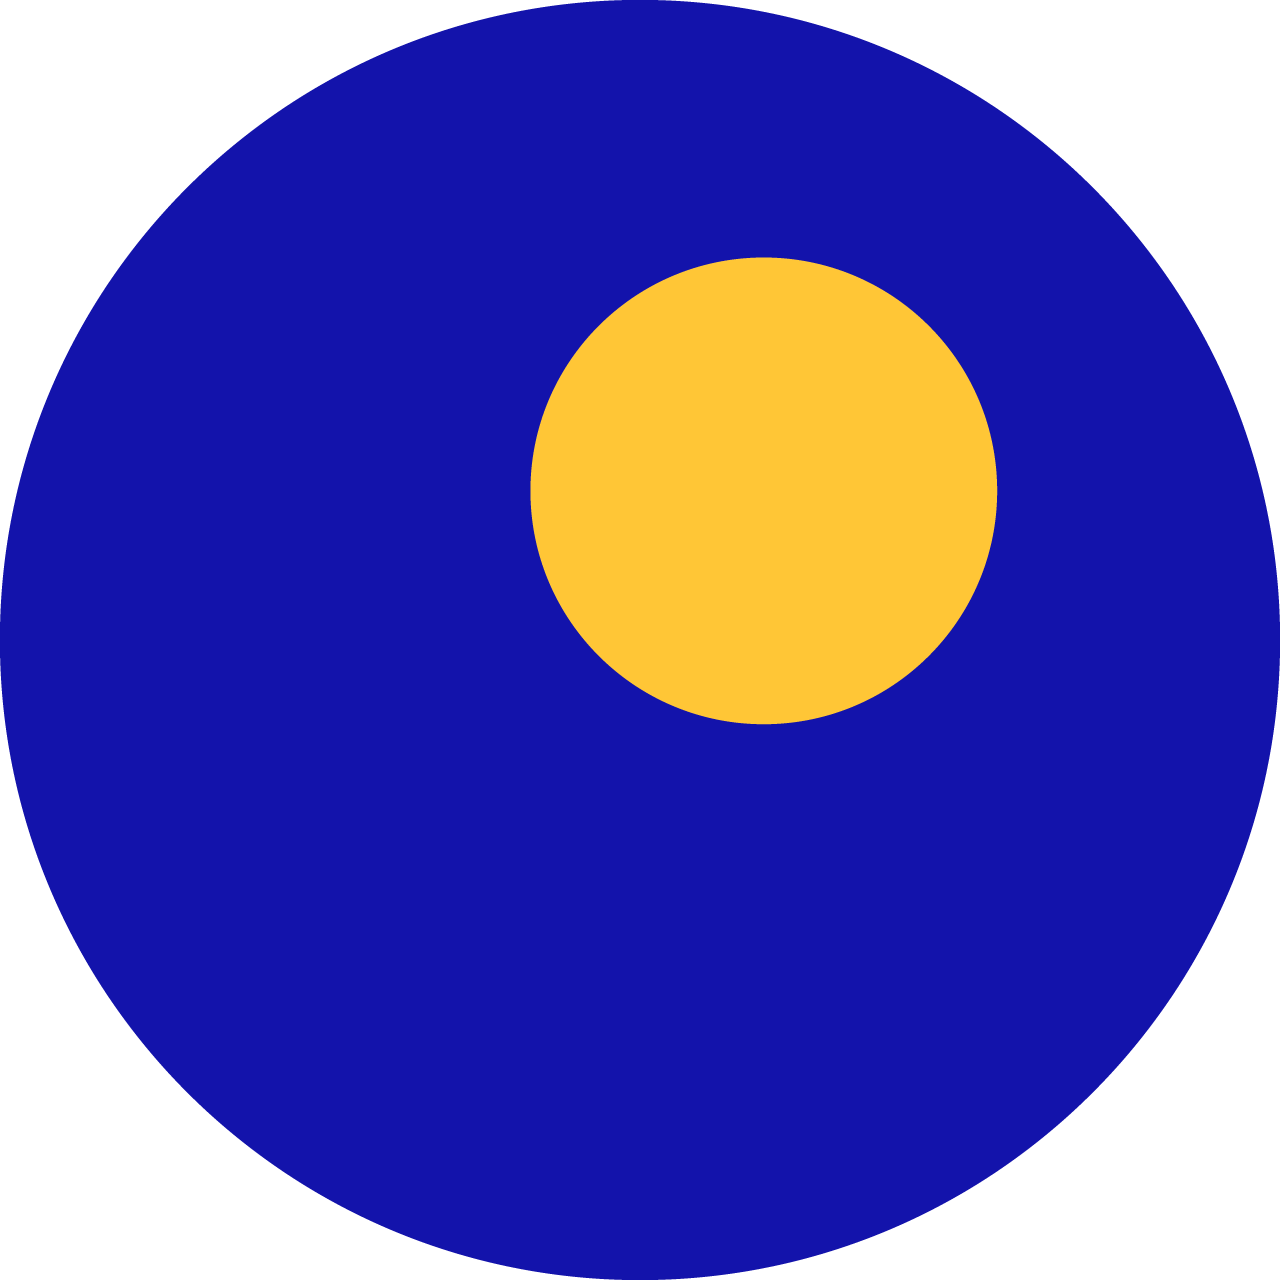 Mein Logo zeigt einen Blauen Kreis mit einem kleineren gelben Kreis in oberen, rechten Bereich. Ähnlich einem Auge das das nach oben sieht. Wie die strahlende Sonne am blauen Himmel.